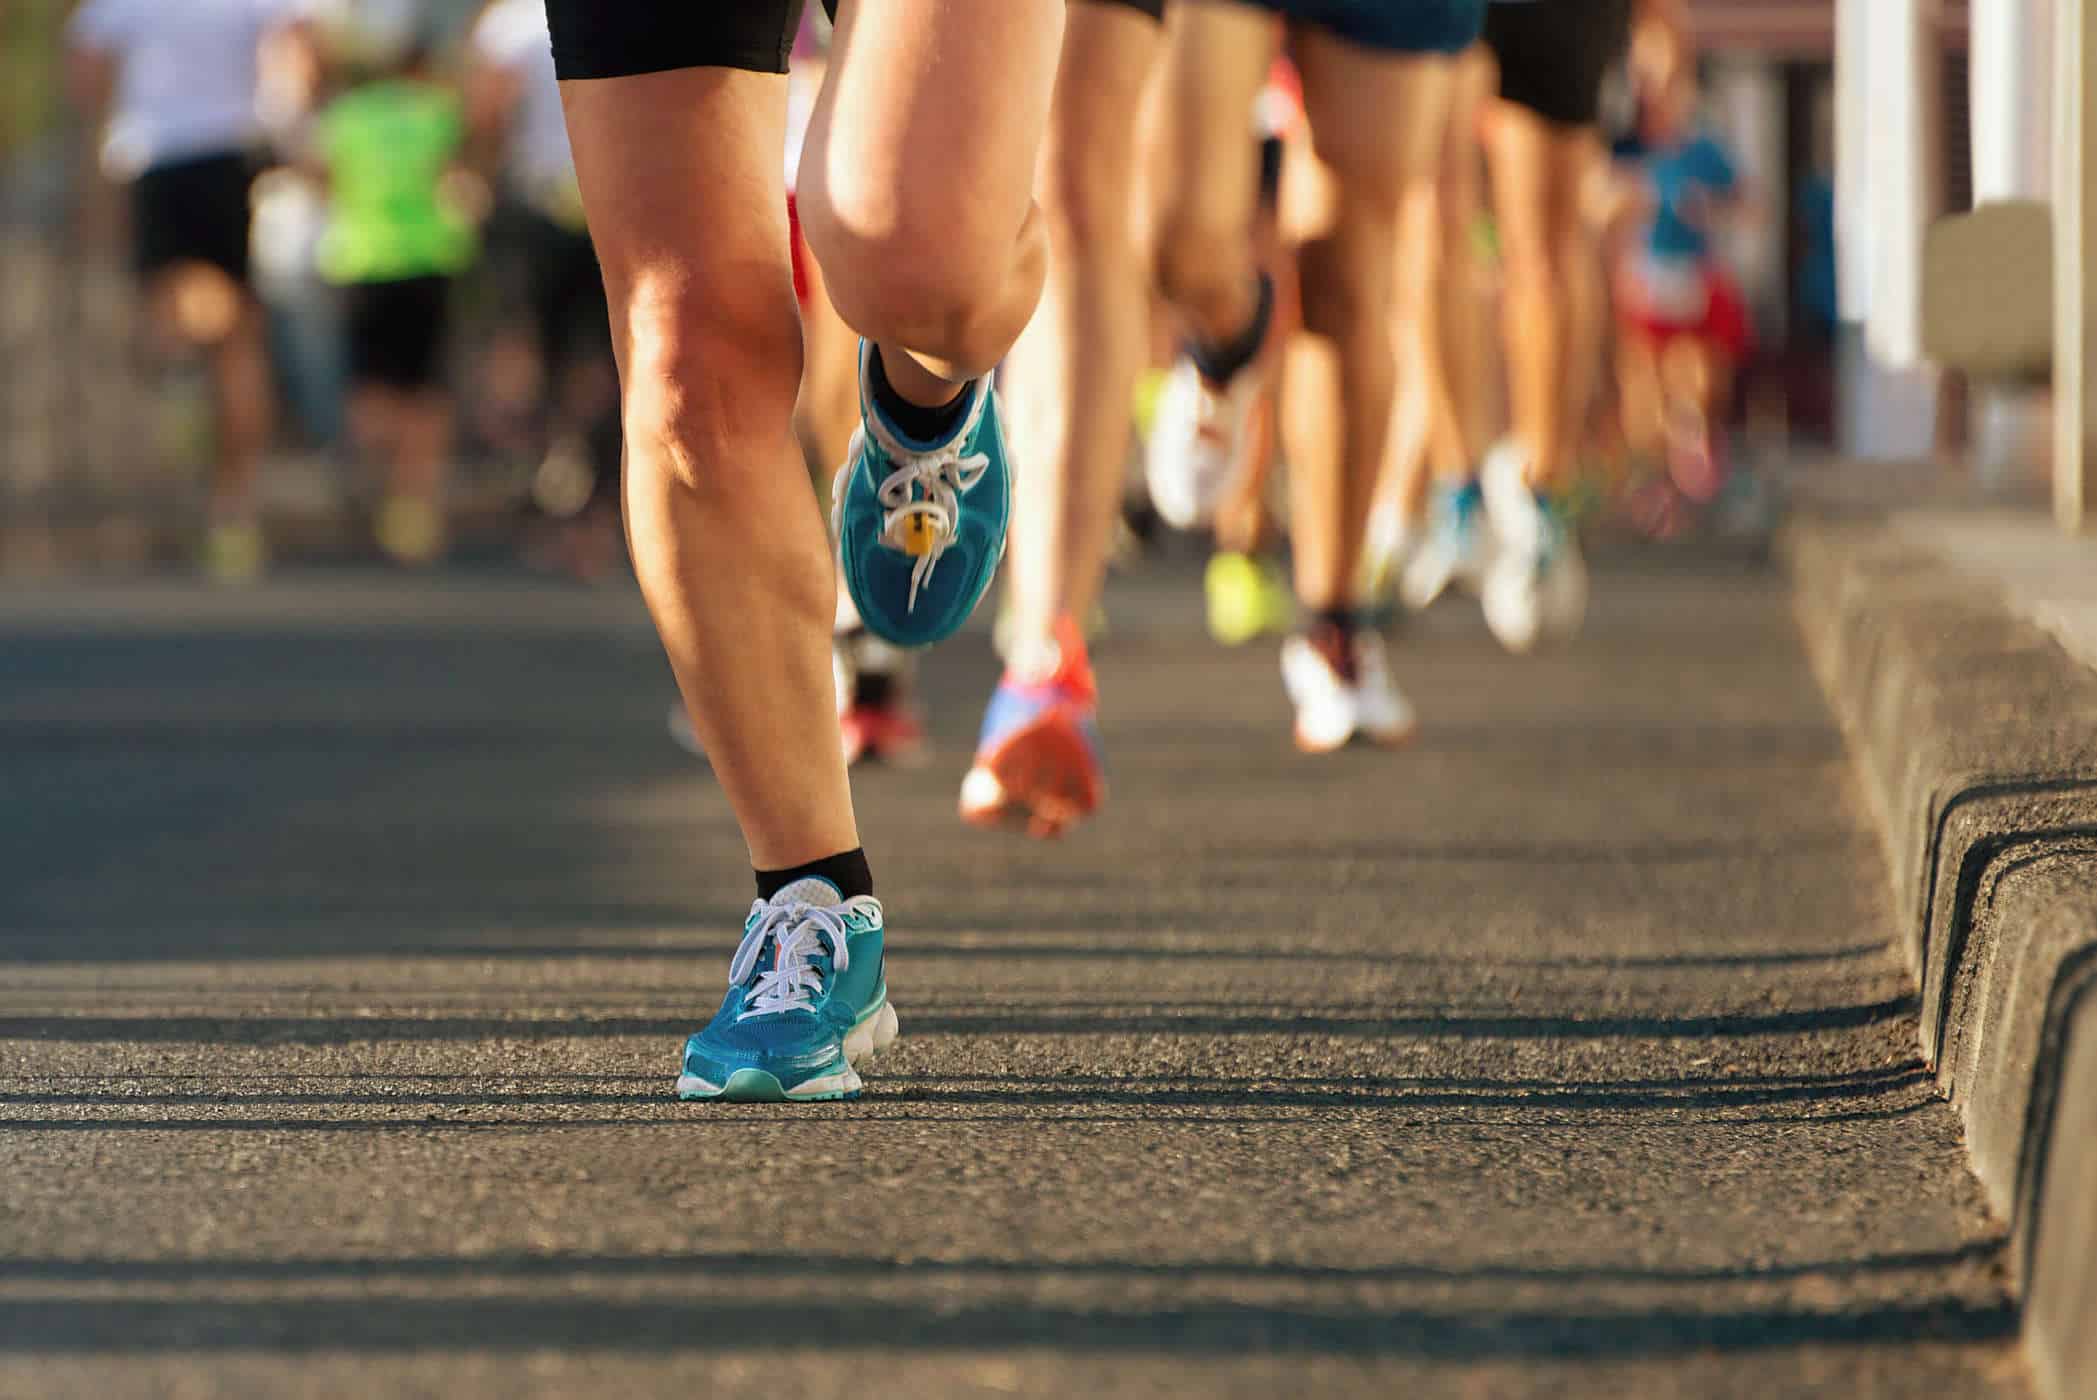 Kiat-Kiat Berlatih untuk Persiapan Lari Marathon 5K